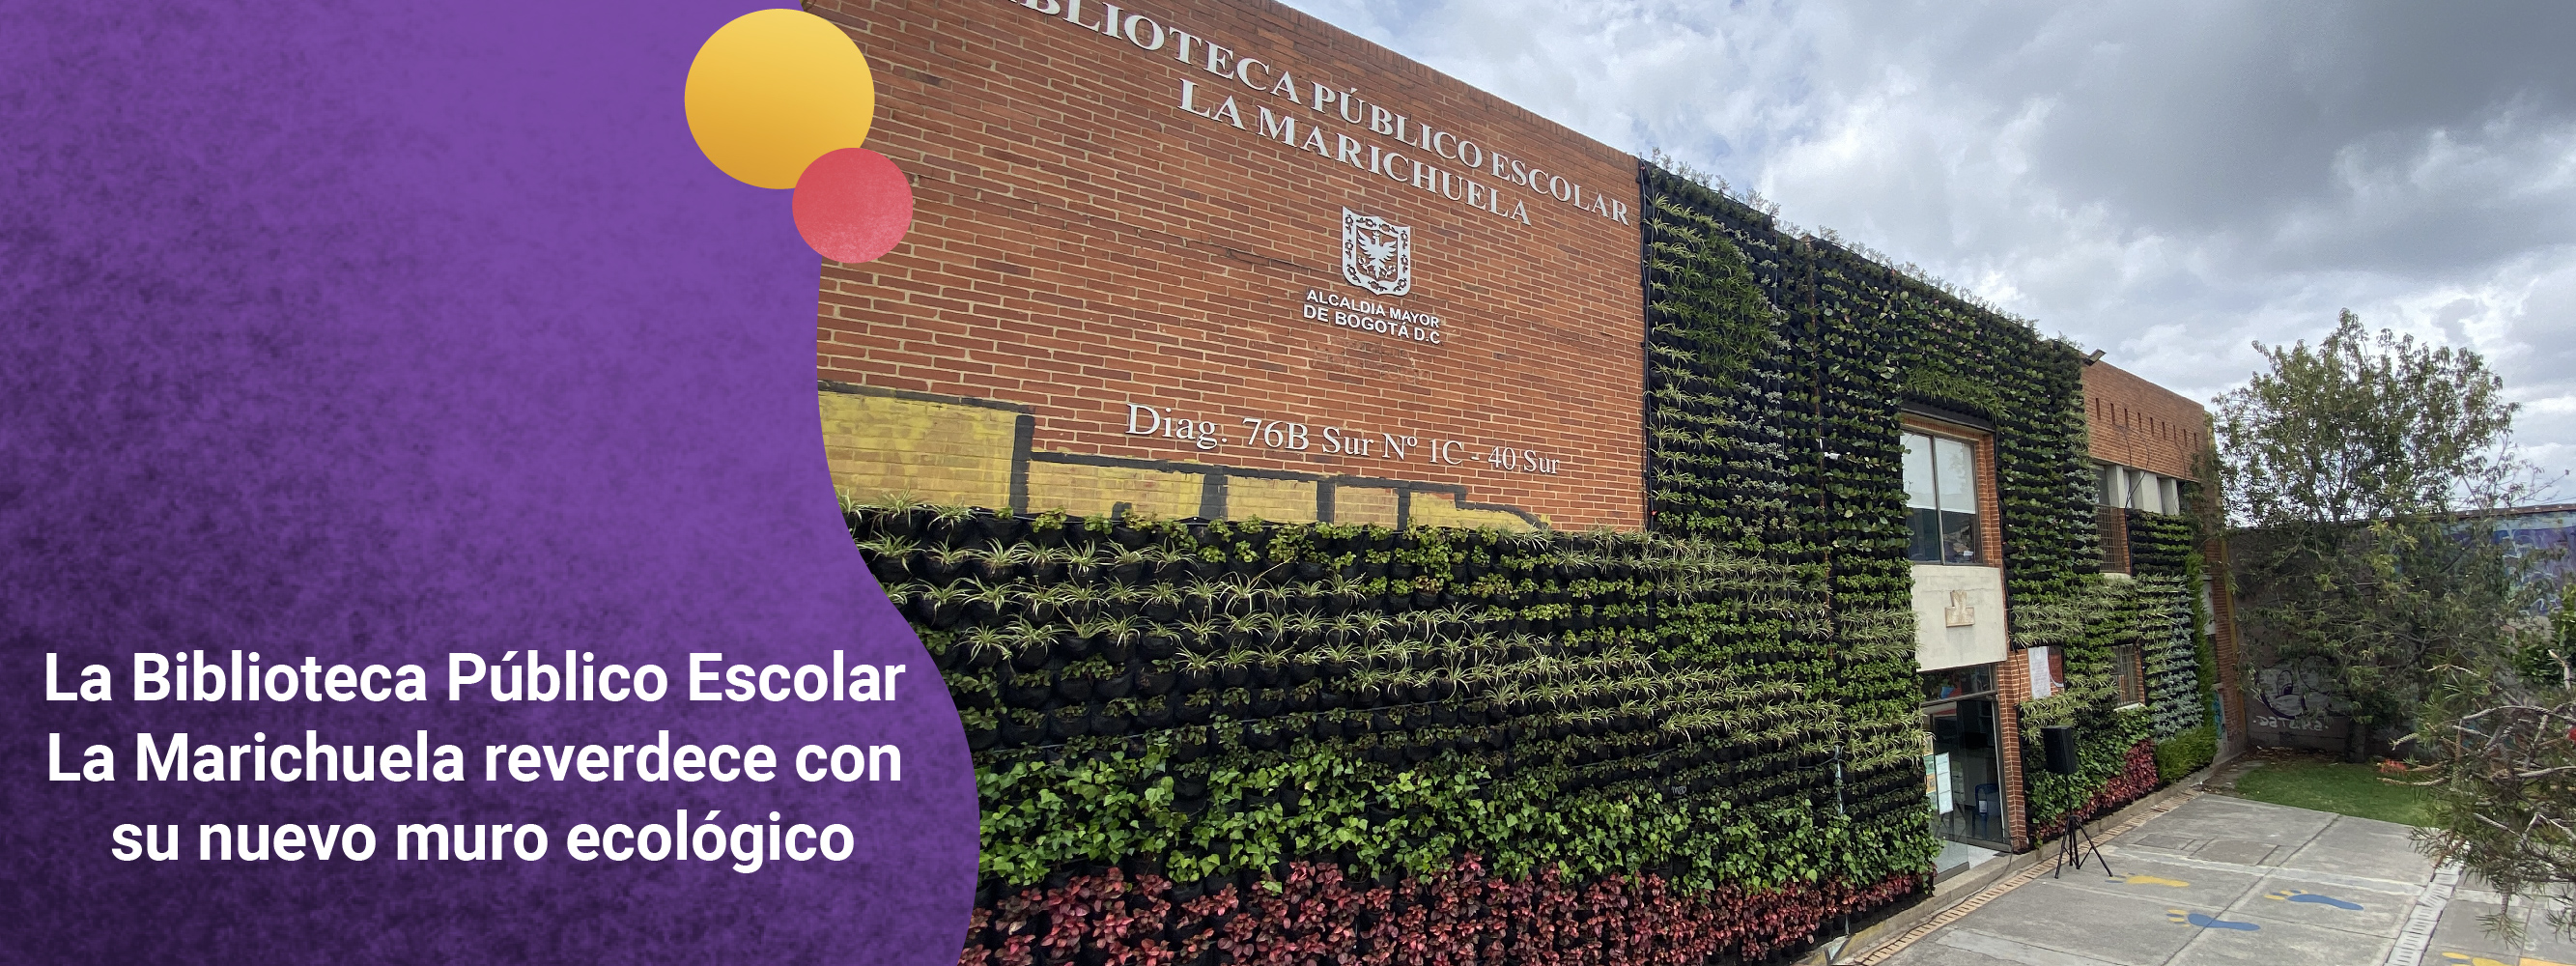 La Biblioteca Público Escolar La Marichuela reverdece con su nuevo muro ecológico